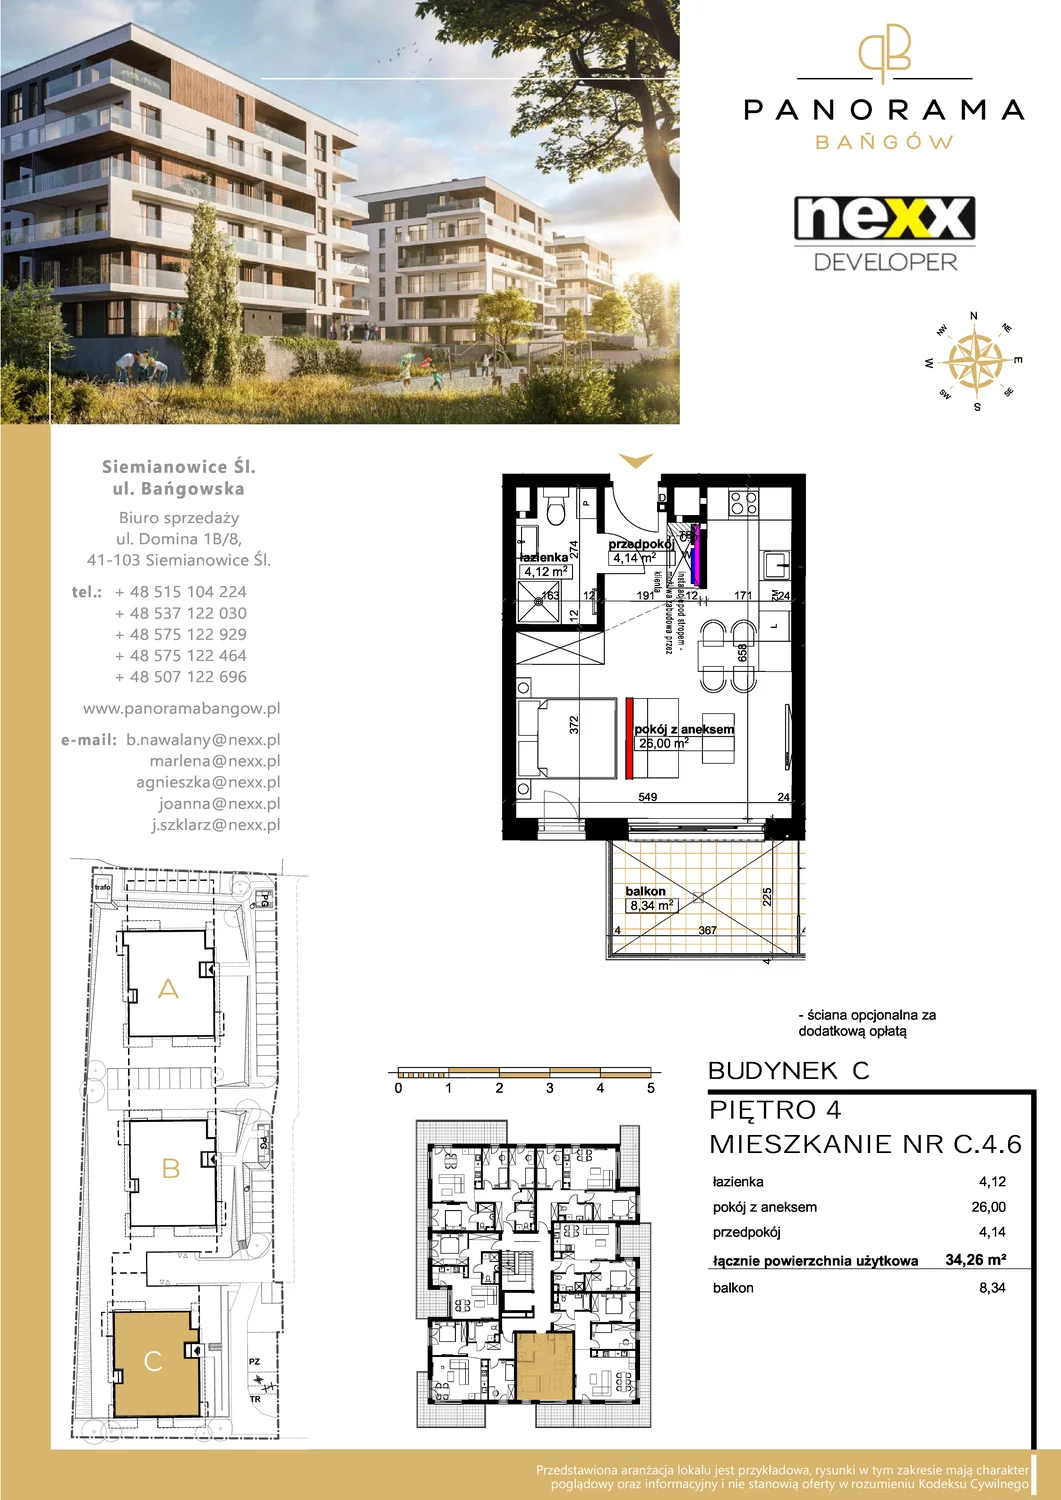 Mieszkanie 34,26 m², piętro 4, oferta nr C 4.6, Panorama Bańgów, Siemianowice Śląskie, Bańgów, ul. Bańgowska